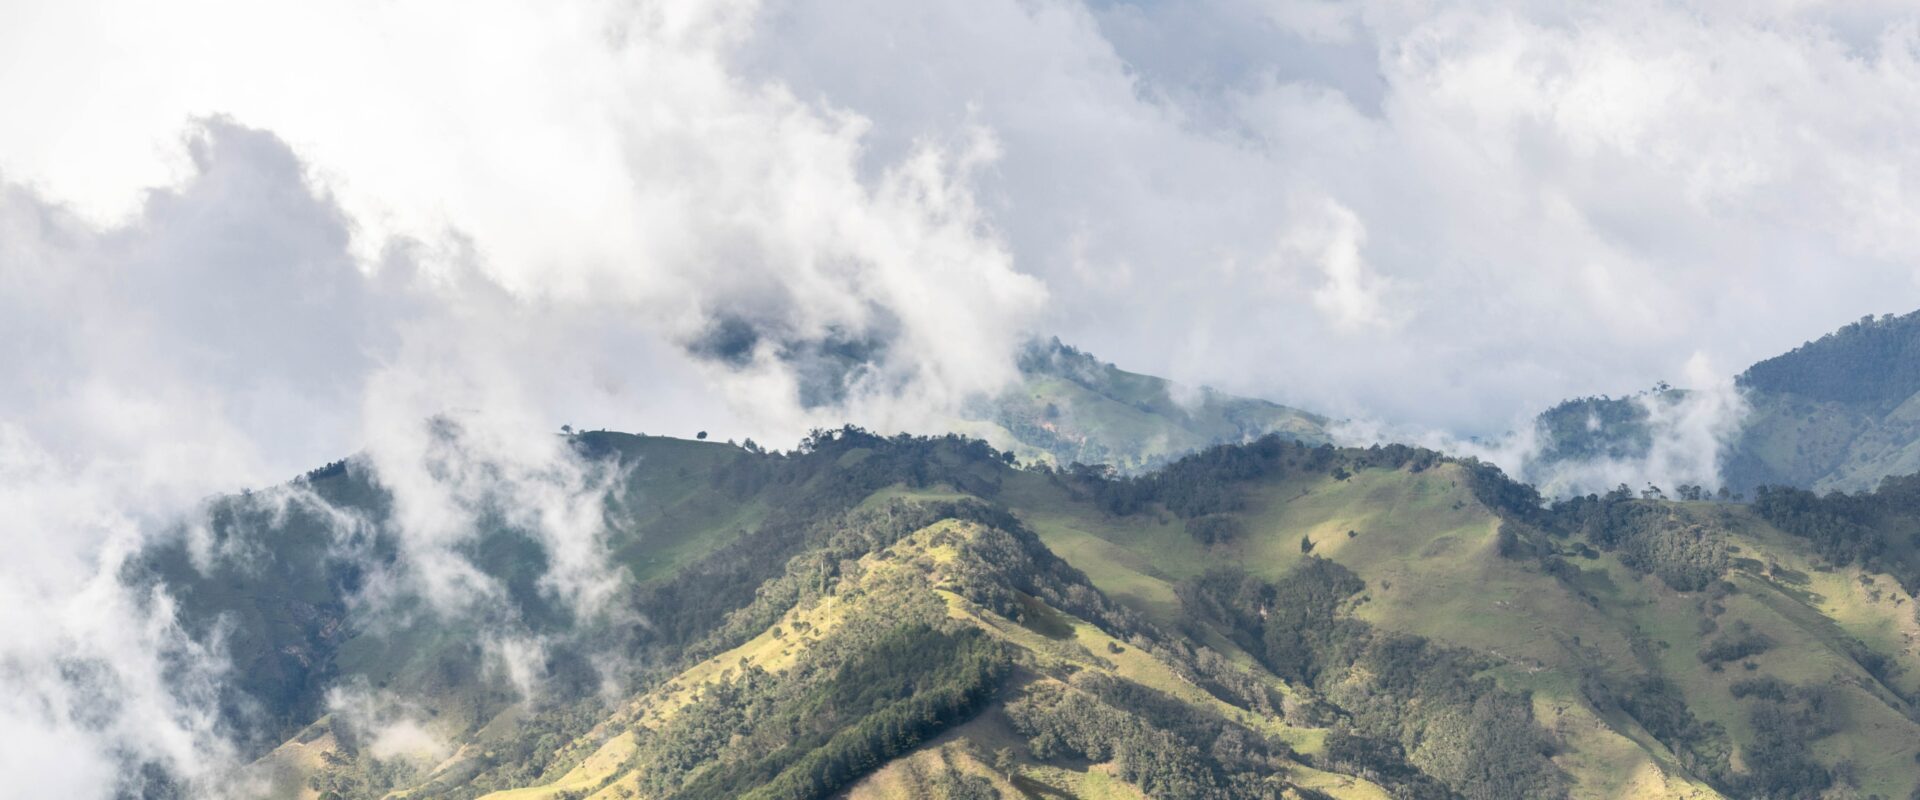 Les meilleurs treks en Colombie